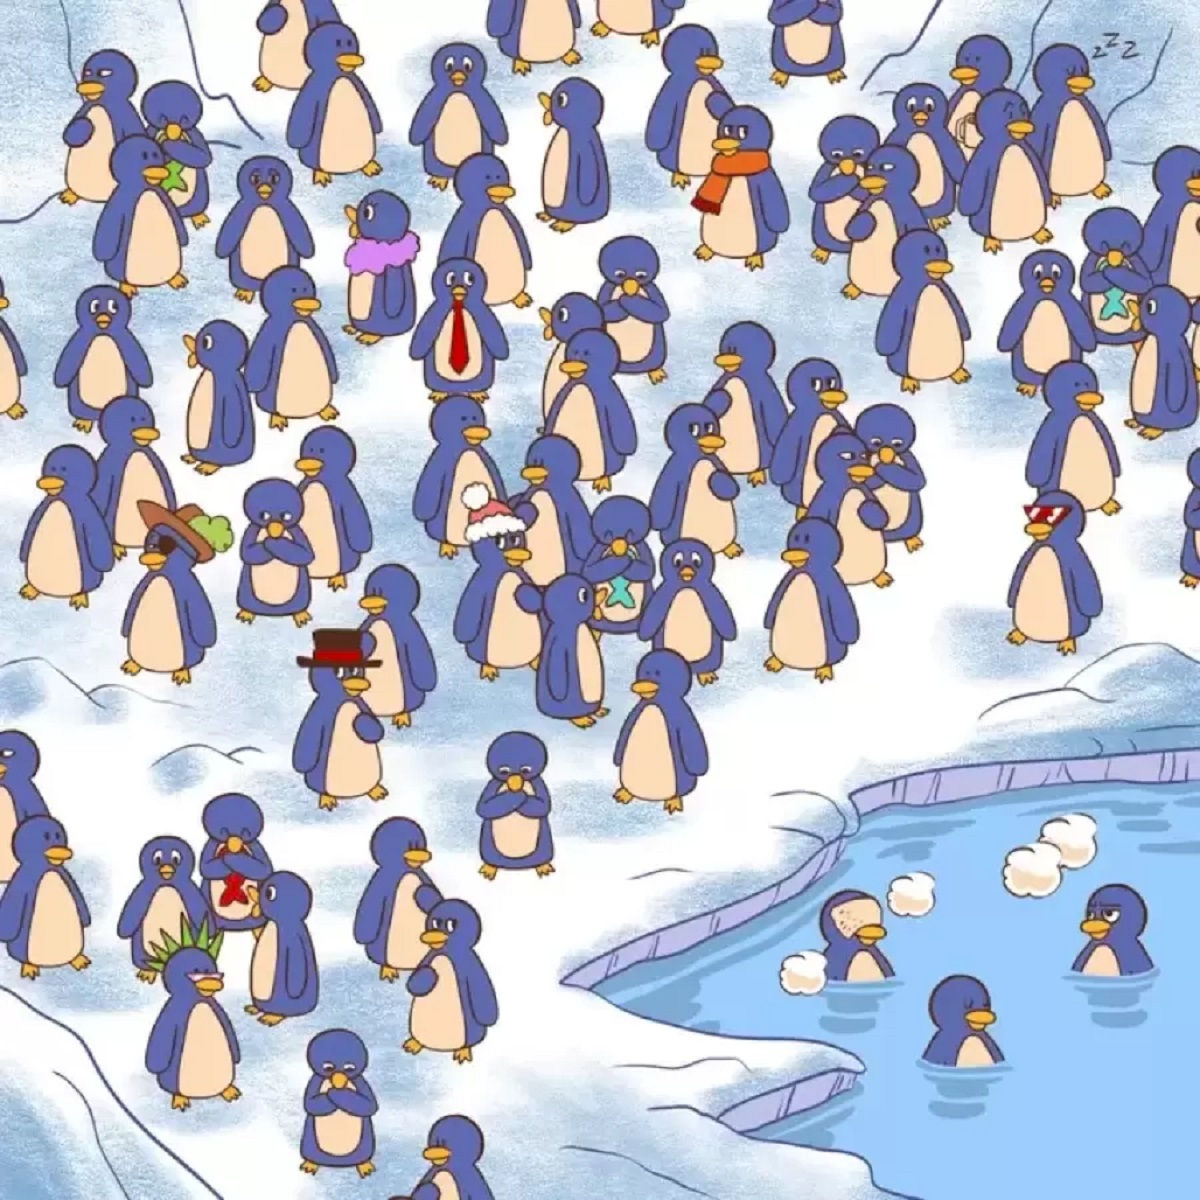 تست بینایی چالشی؛ فنجان را در میان پنگوئن‌ها پیدا کنید!